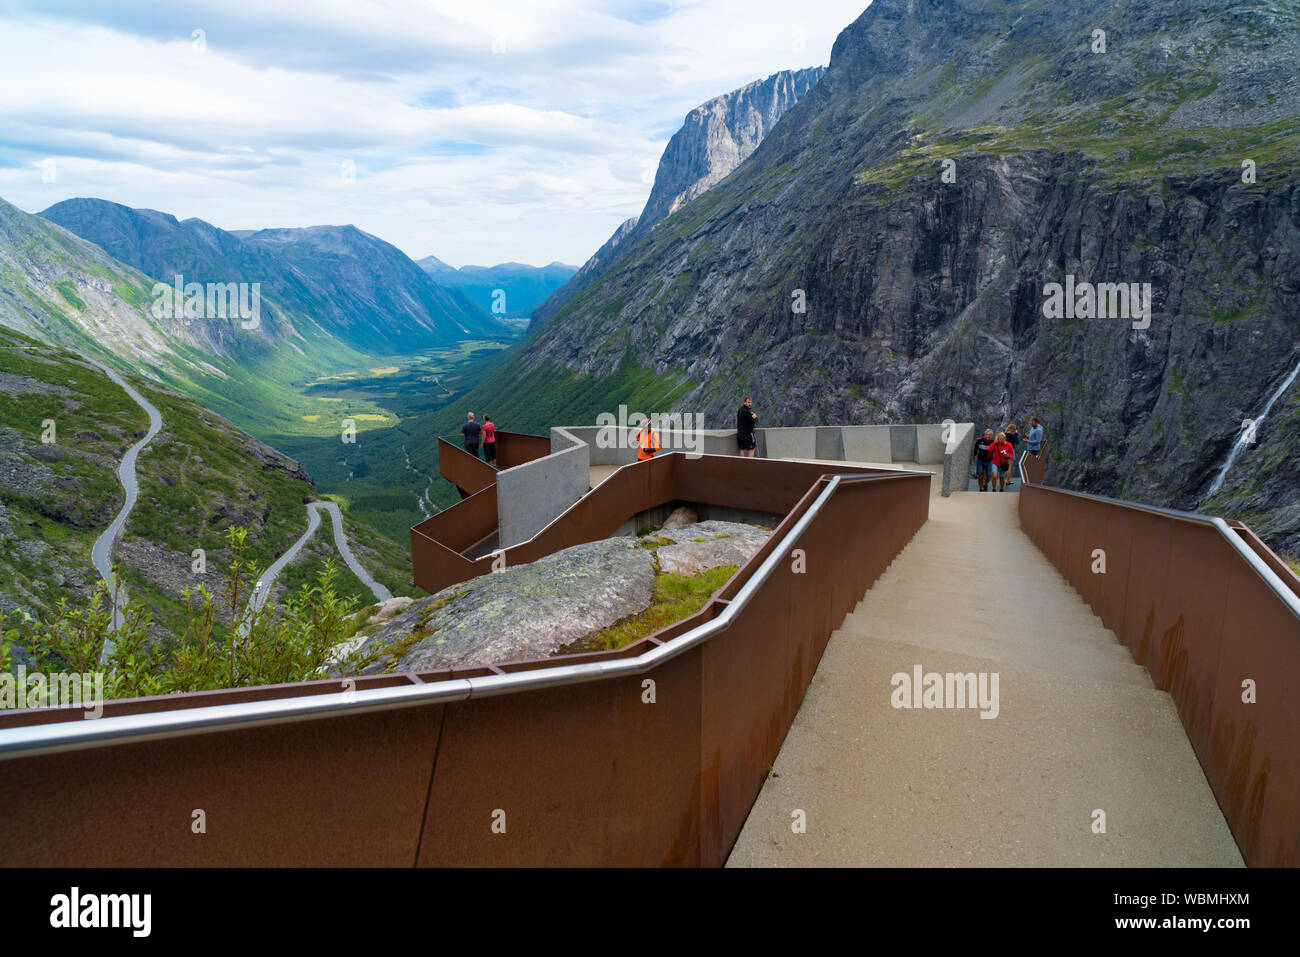 TROLLSTIGEN, NORWAY - JULY 30, 2018: Unique viewpoint platform looking out over the Trollstigen or Trolls Path, a serpentine mountain road in Rauma Mu Stock Photo